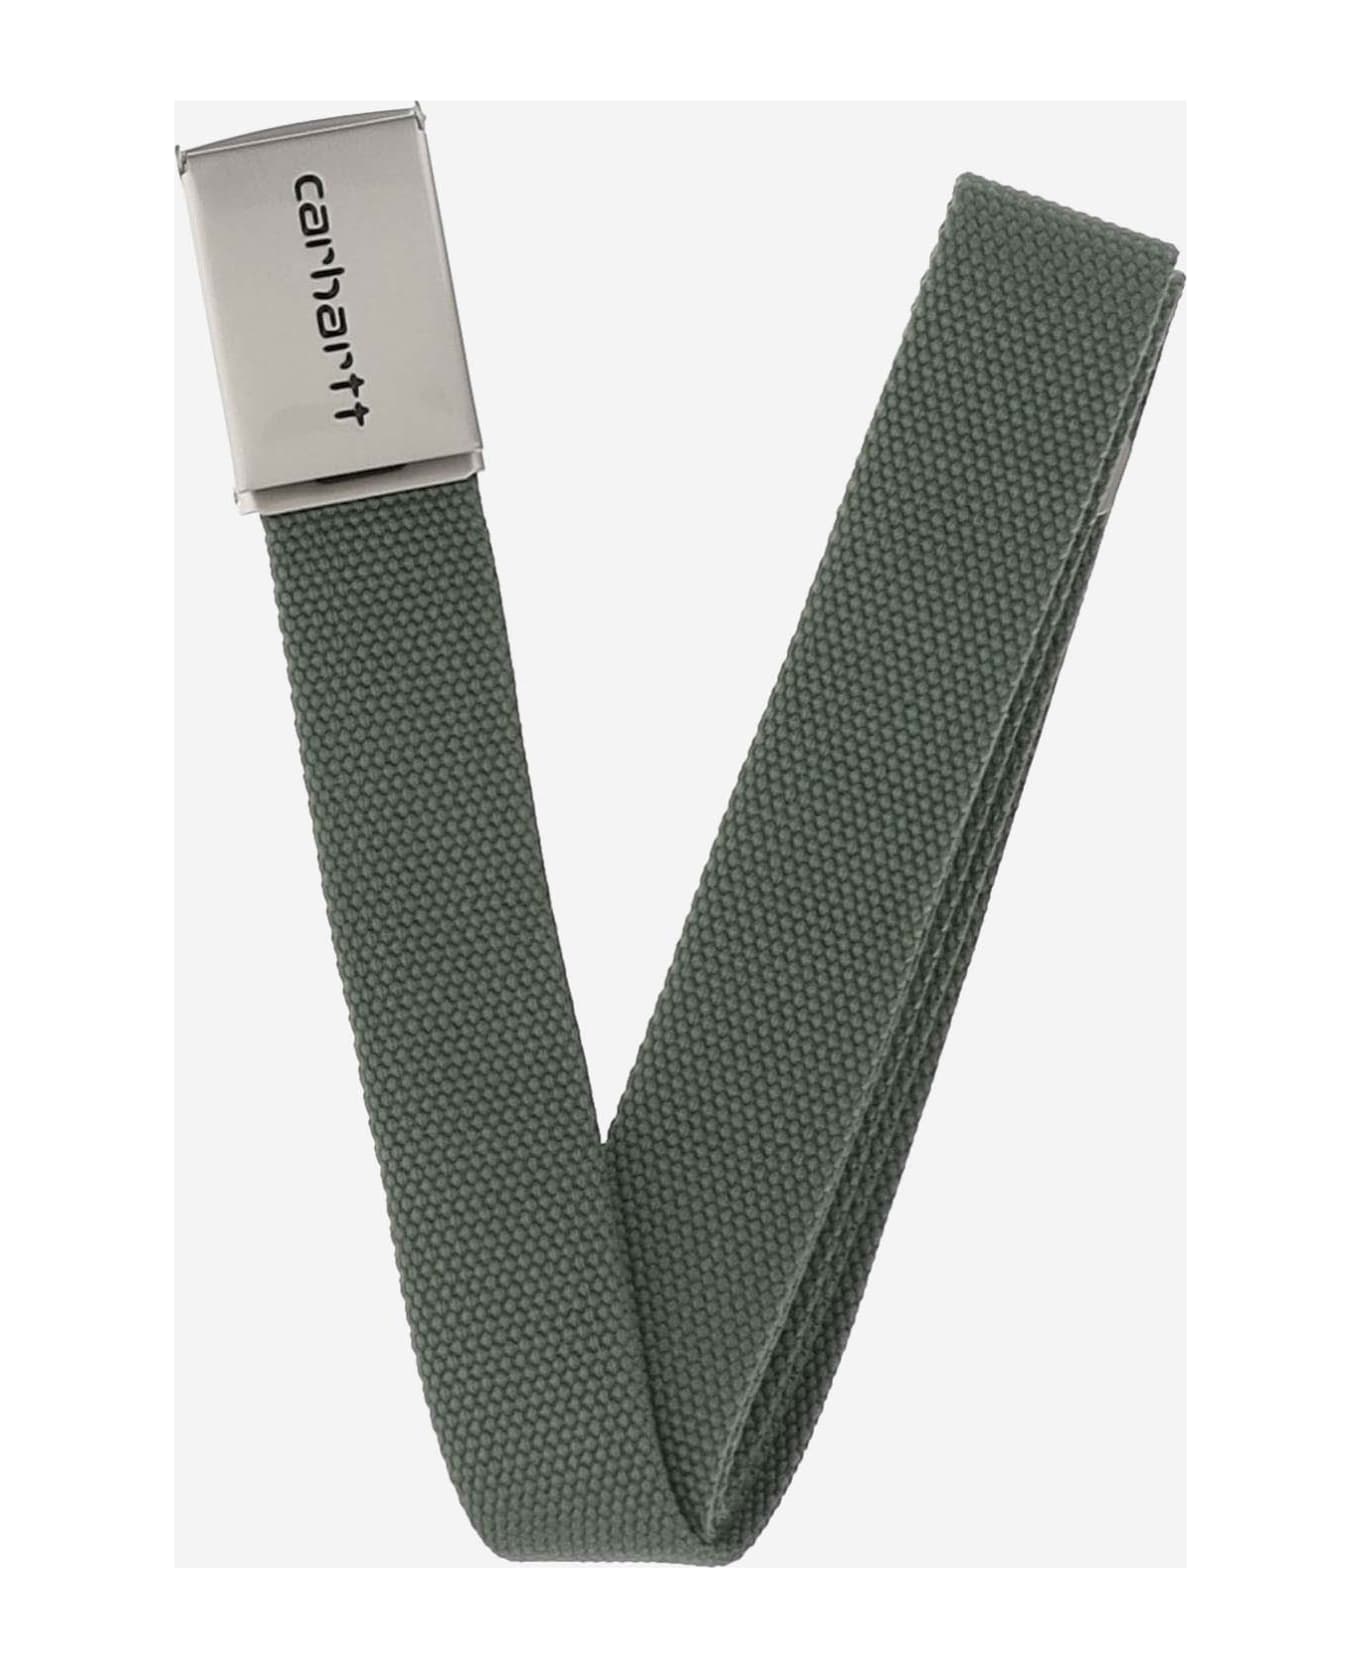 Carhartt Technical Fabric Belt With Logo - Green